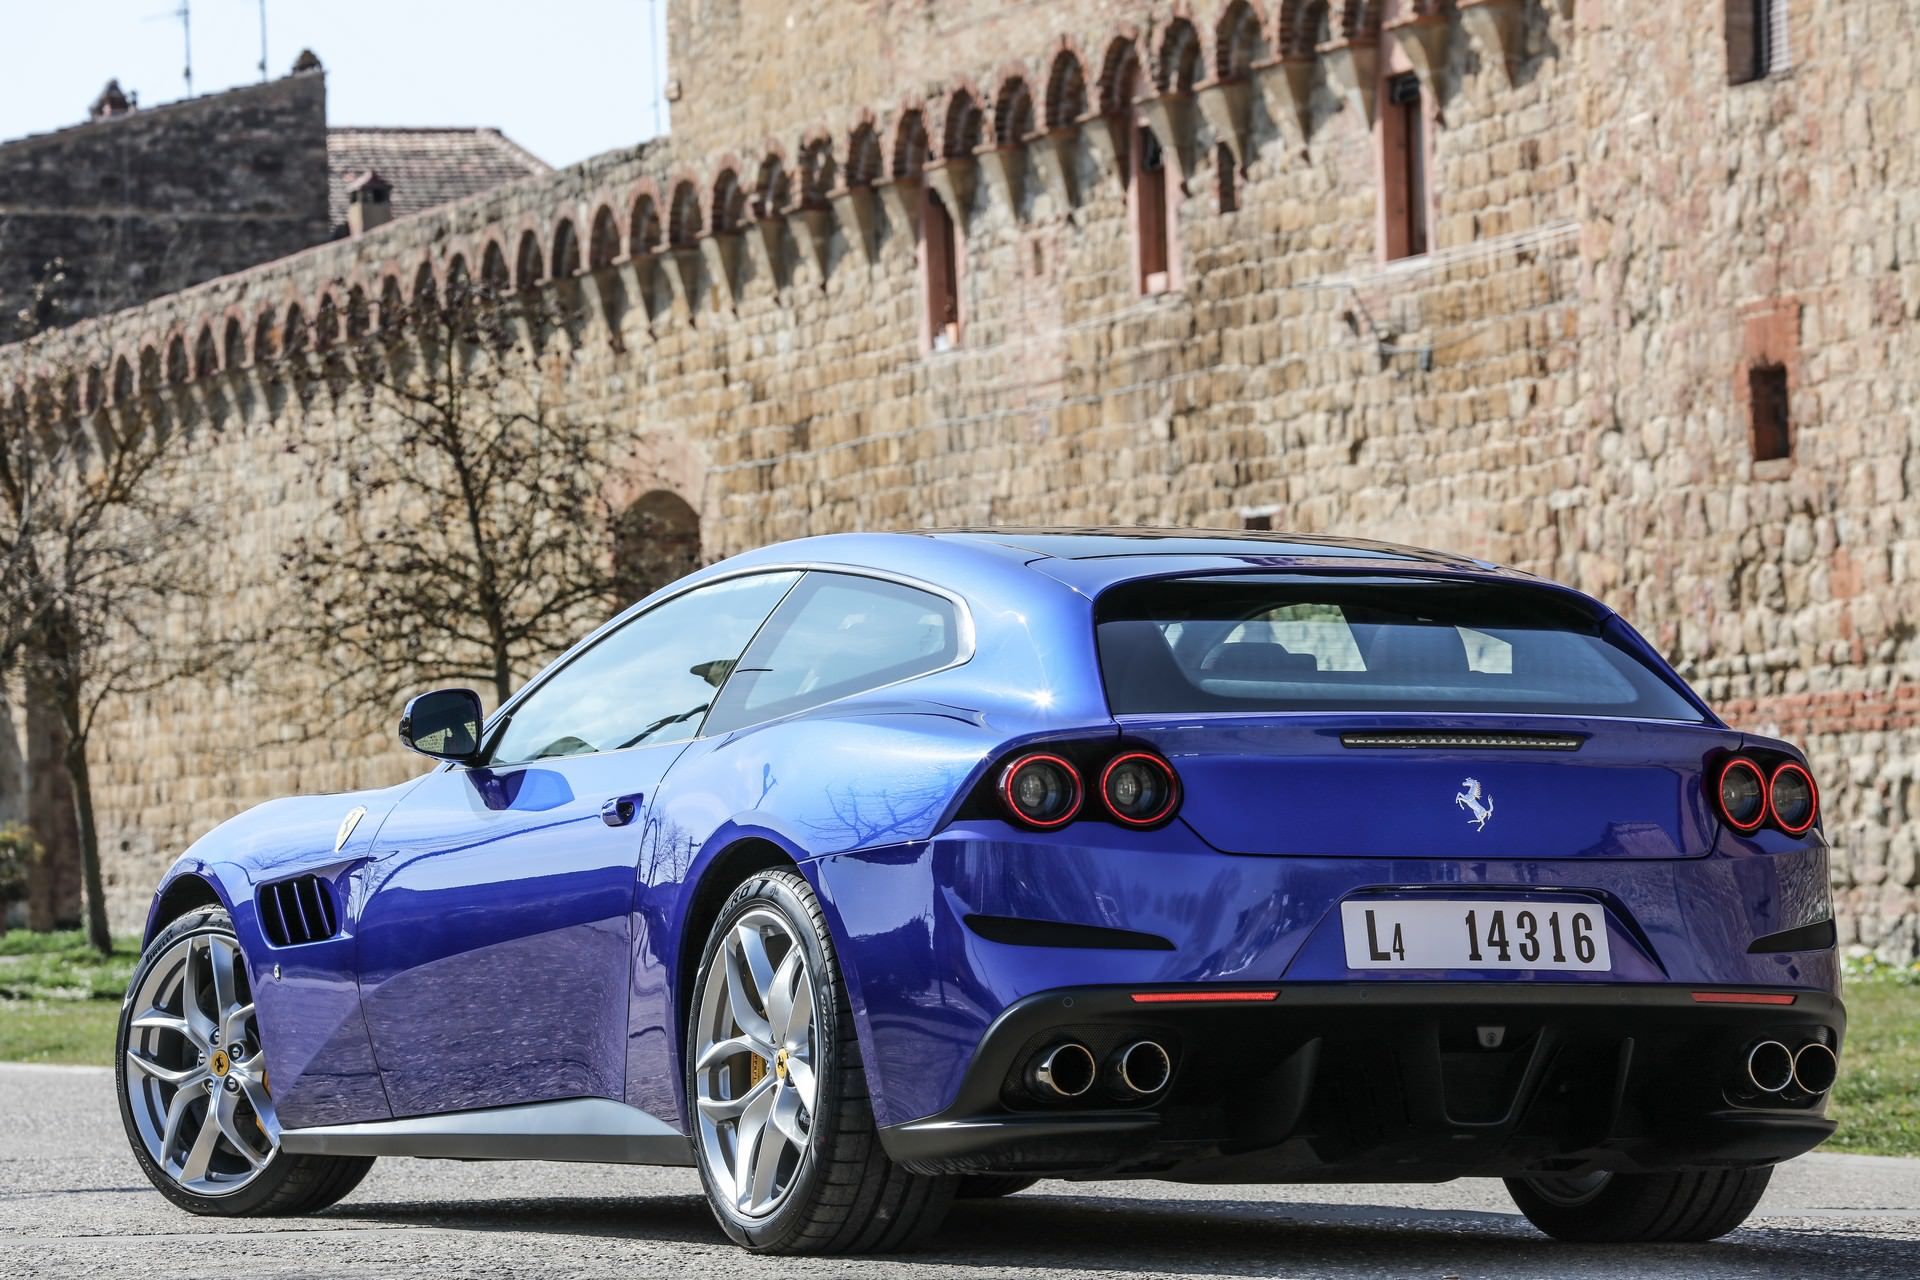 نمای عقب فراری جی تی سی 4 لوسو / Ferrari GTC4 Lusso آبی رنگ